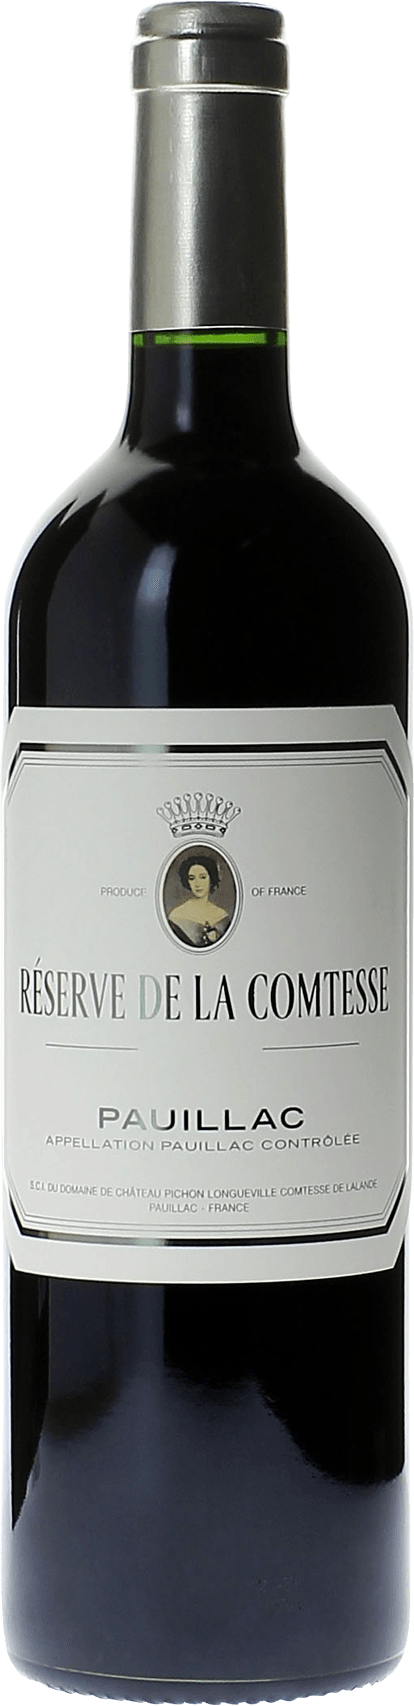 Reserve de la comtesse 2016 2nd Vin de Pichon Comtesse Pauillac, Bordeaux rouge